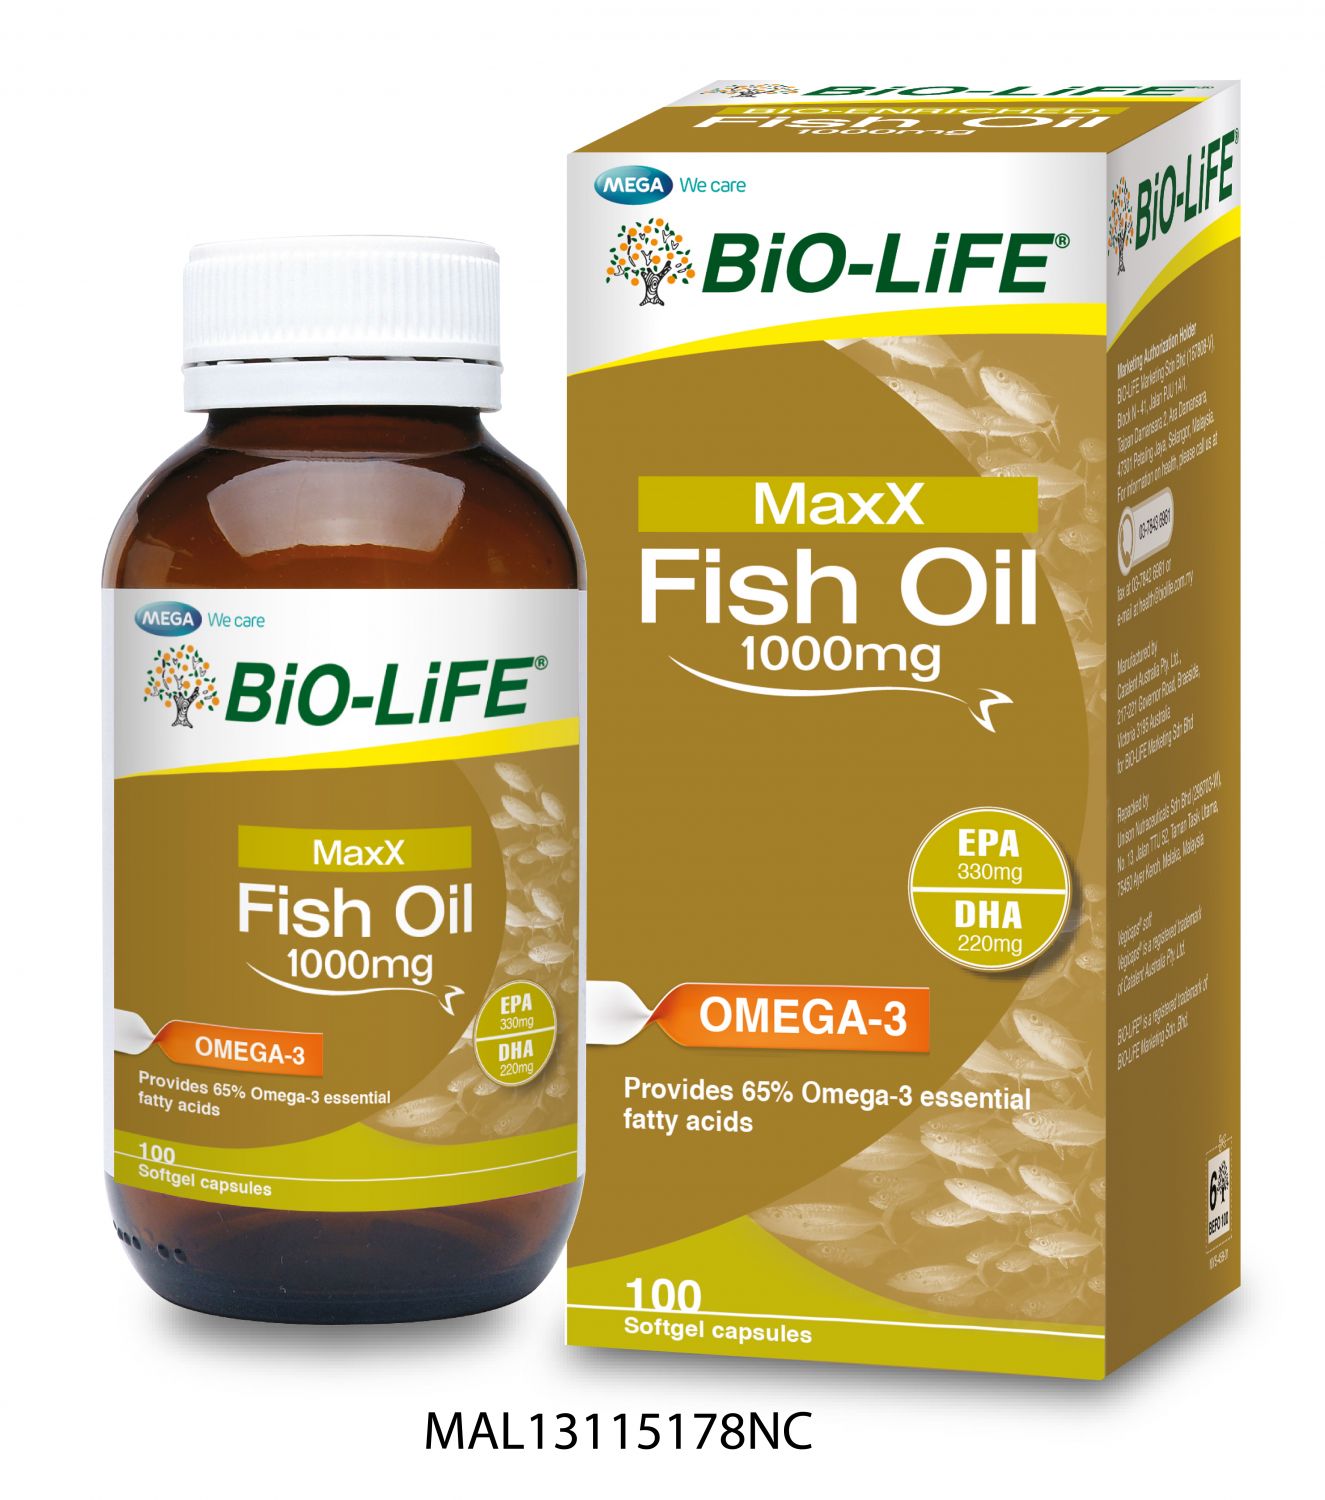 BiOLiFE MaxX Fish Oil 1000mg reviews